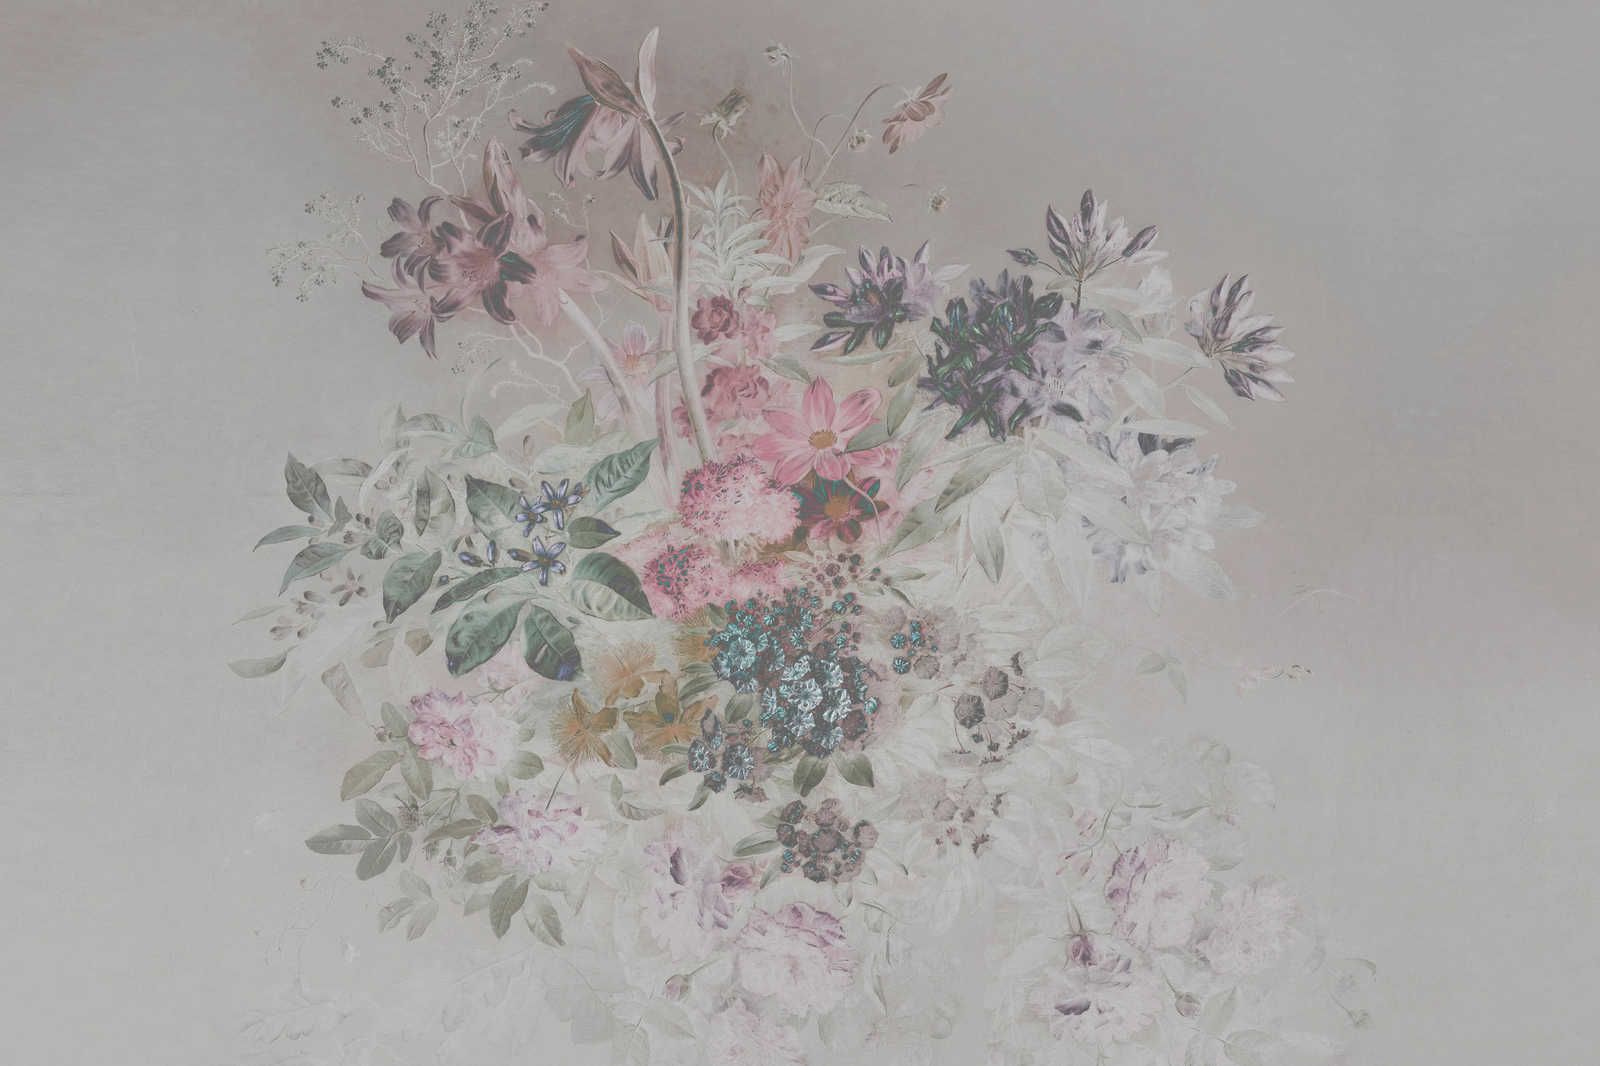             Quadro su tela con fiori e disegno a pastello - 0,90 m x 0,60 m
        